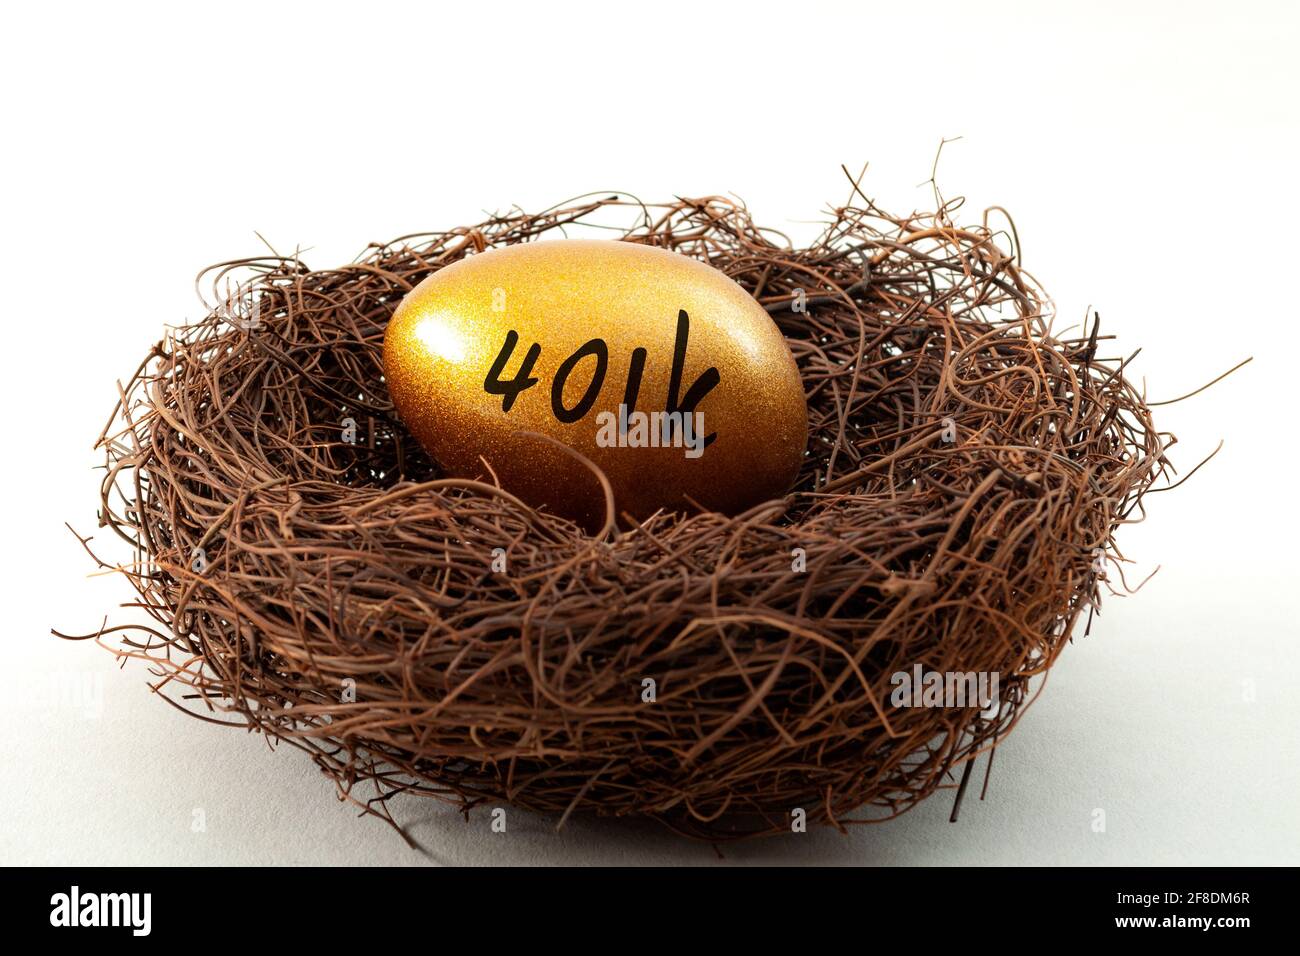 Conto pensionistico individuale, risparmio personale e concetto di fondo pensionistico con primo piano su un uovo d'oro in un nido che simboleggia la ricchezza accumulata wi Foto Stock